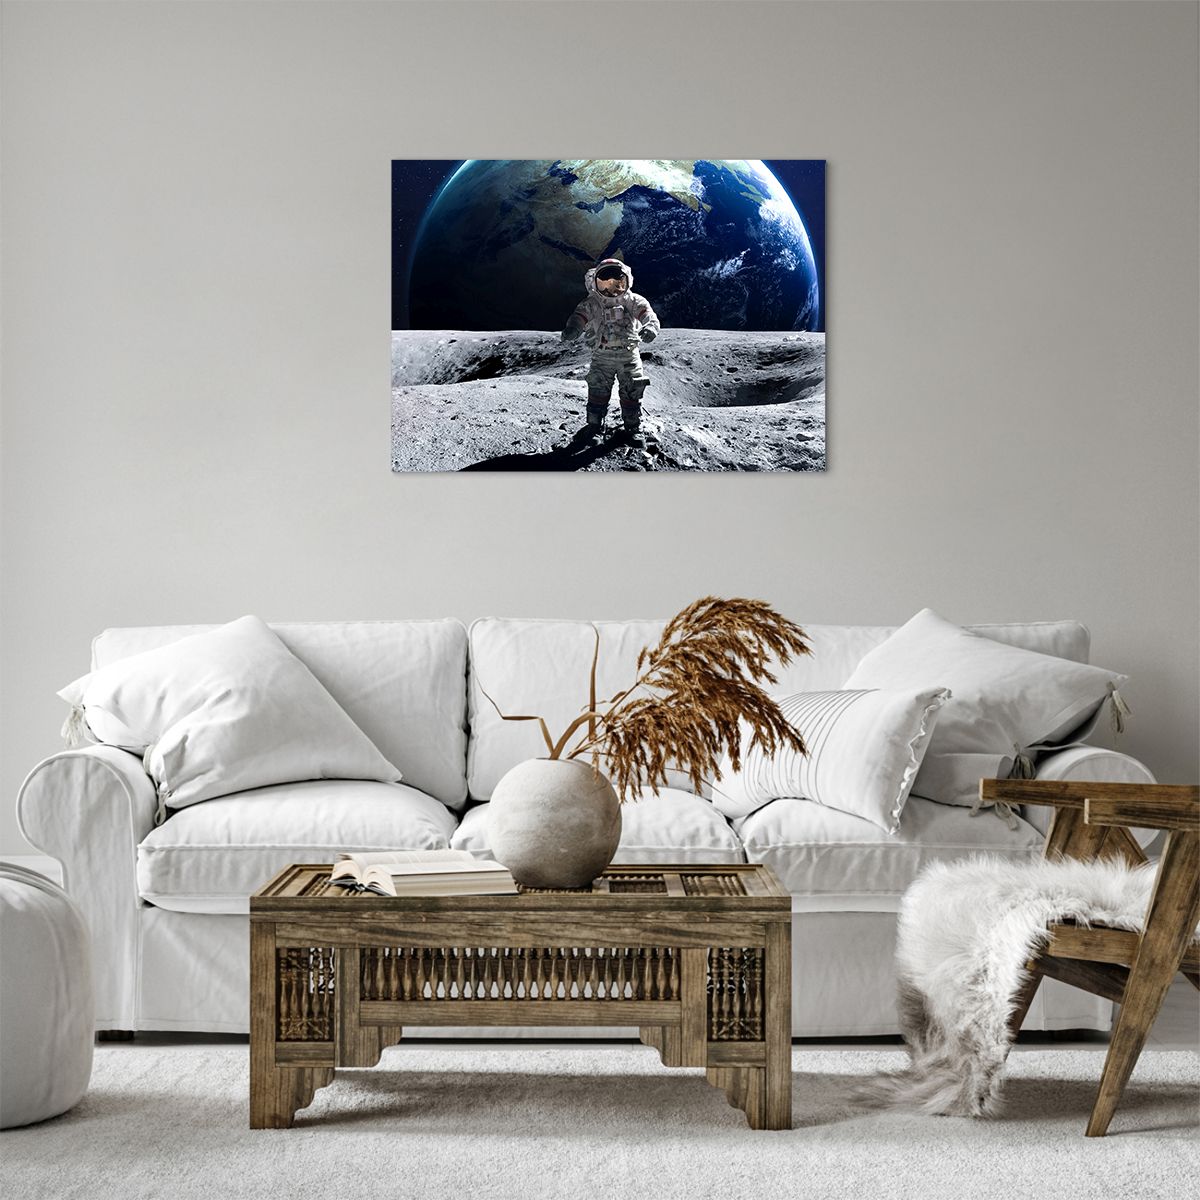 Impression sur toile Astronaute, Impression sur toile Lune, Impression sur toile Planète Terre, Impression sur toile Cosmos, Impression sur toile Cosmonaute